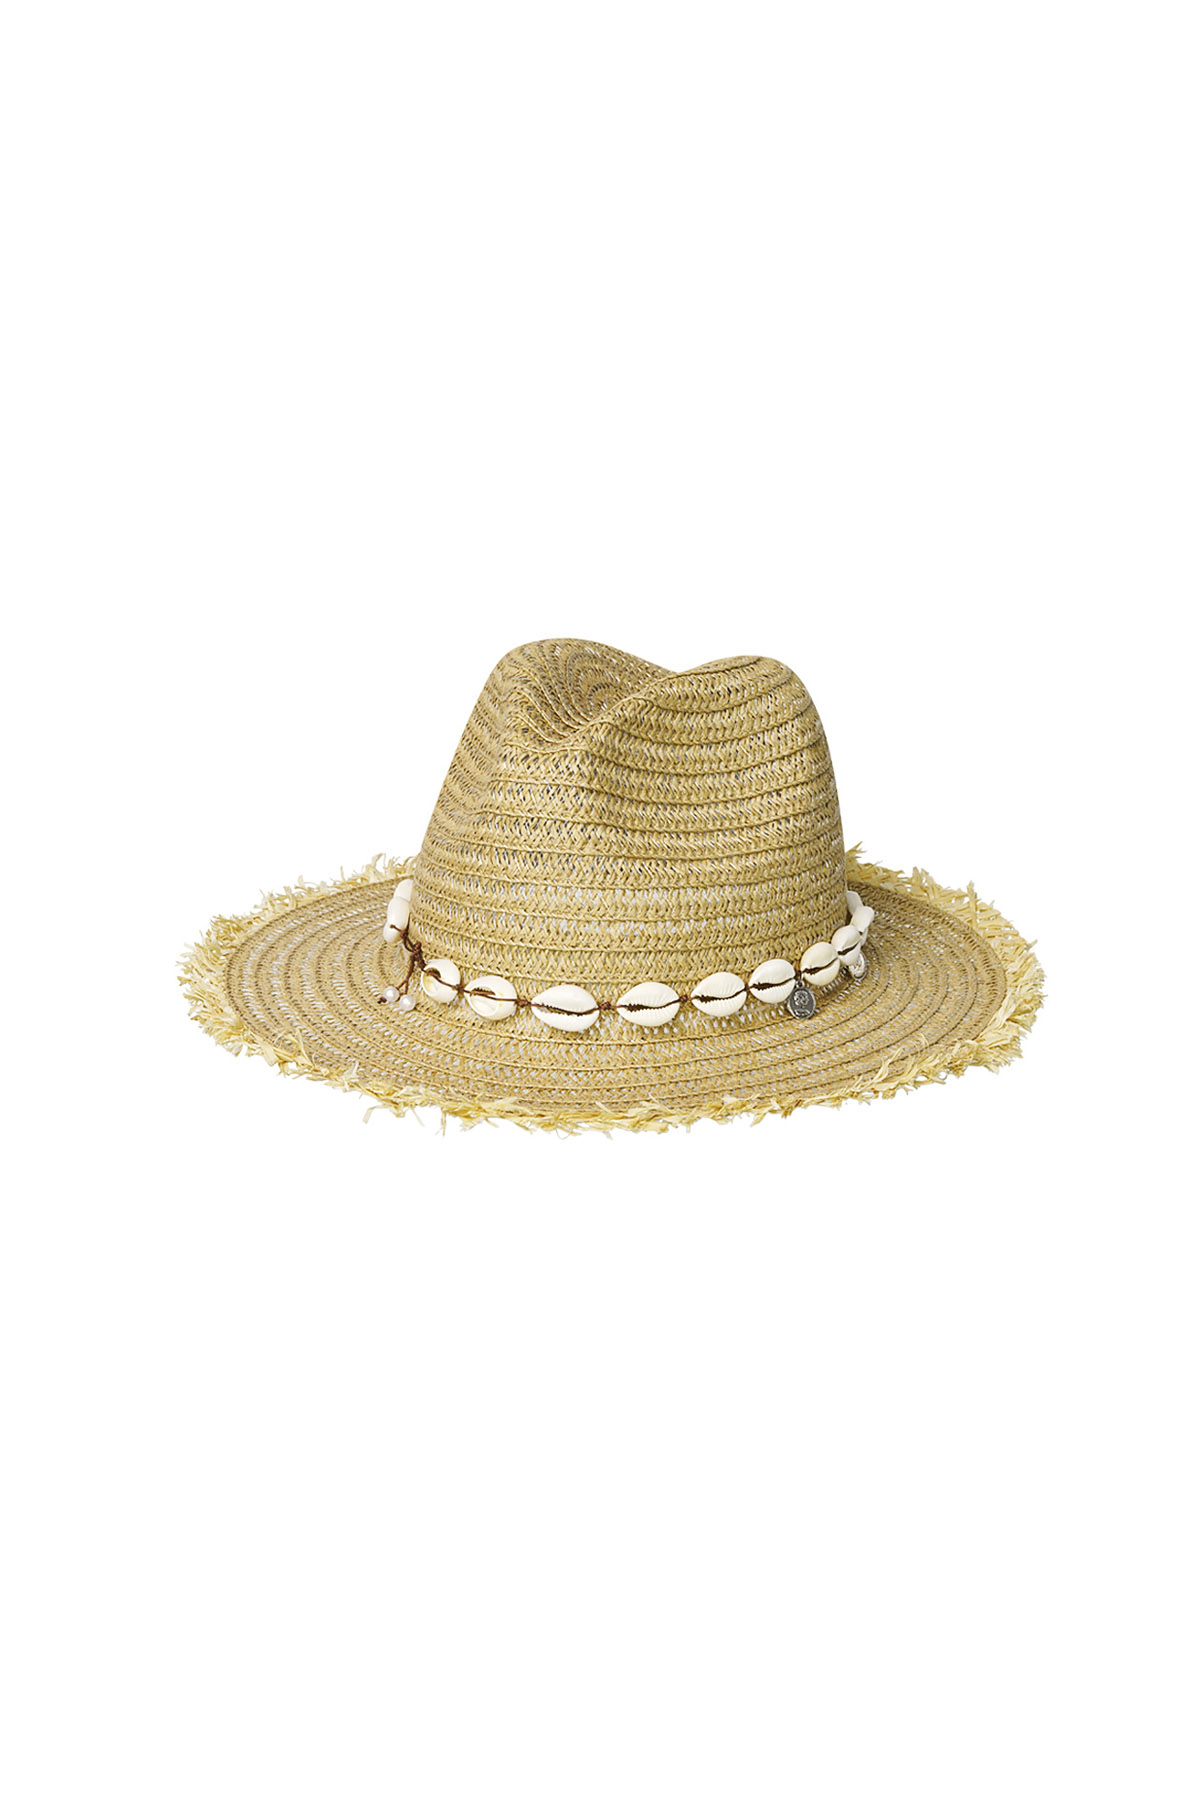 Yazlık şapka kabukları - bej Kağıt h5 